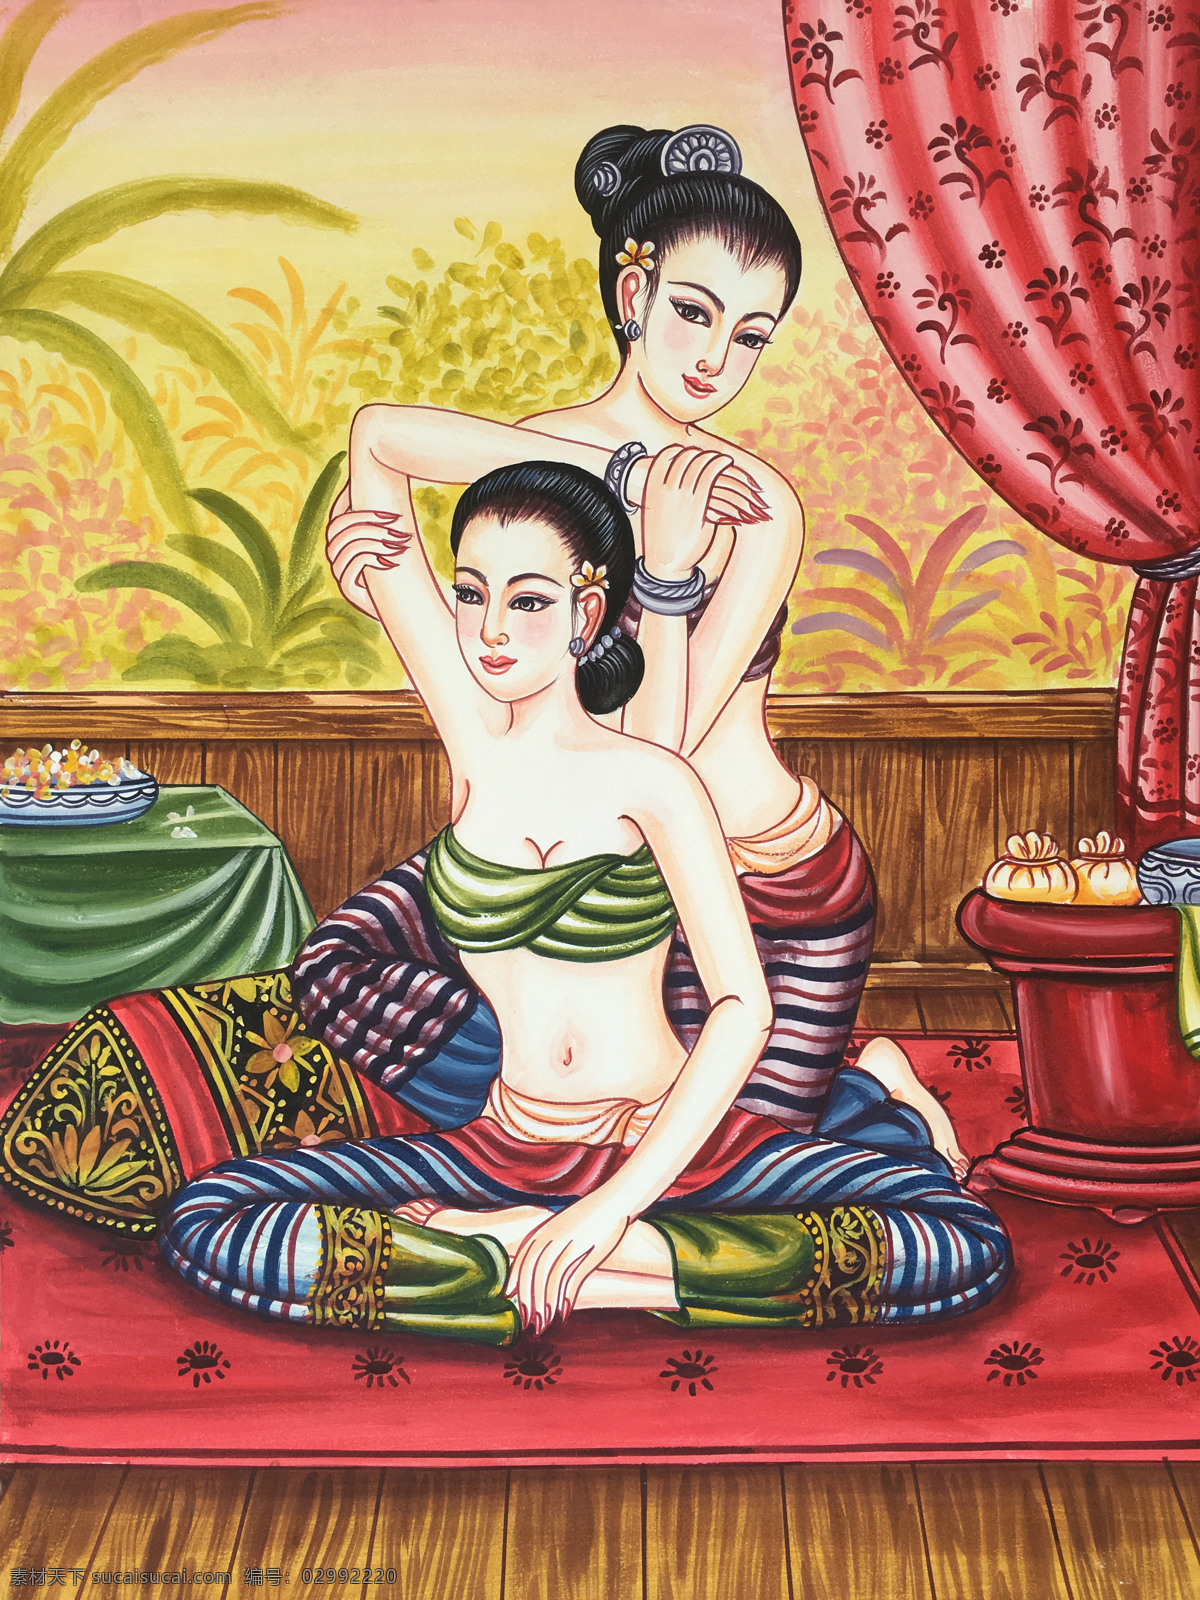 泰式按摩图 泰式按摩 美容spa 养生会所 泰国艺术 美体艺术 按摩推拿 文化艺术 传统文化